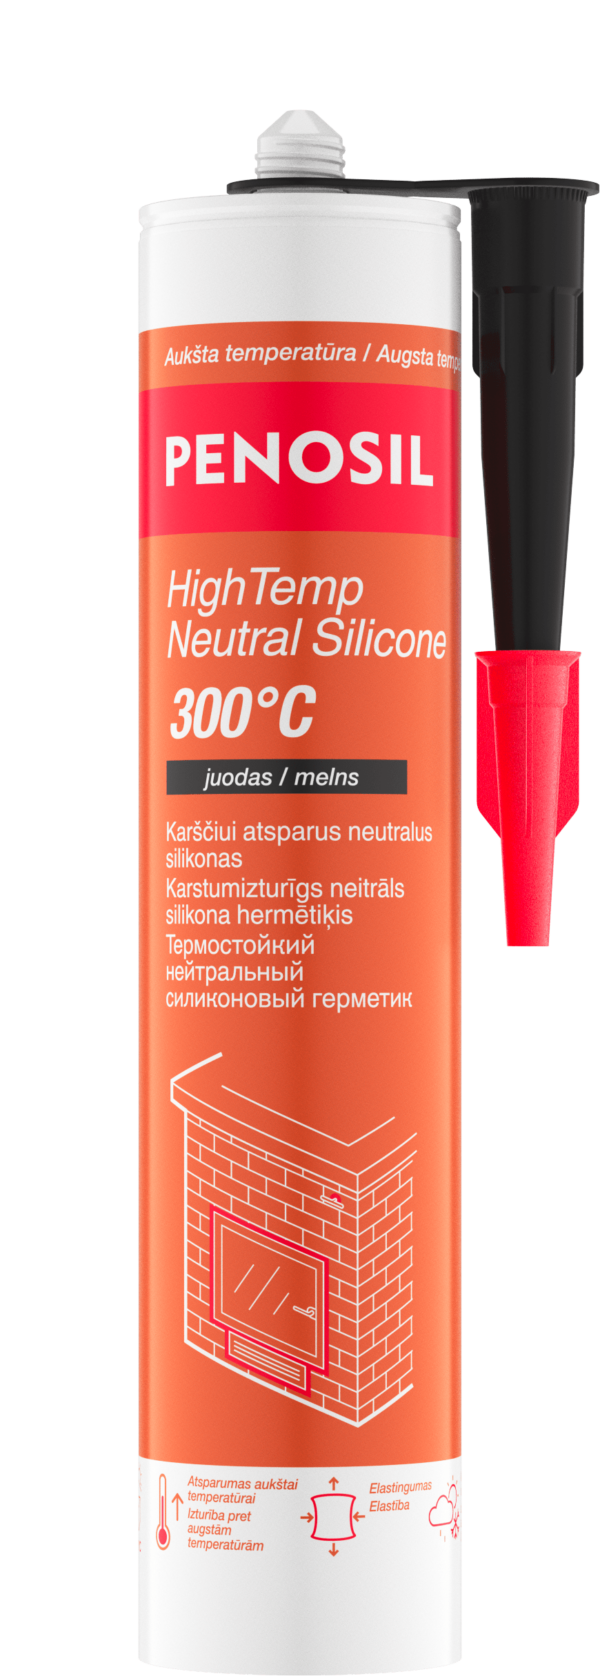 PENOSIL HighTemp Neutral +300°C atsparus karščiui neutralus silikonas